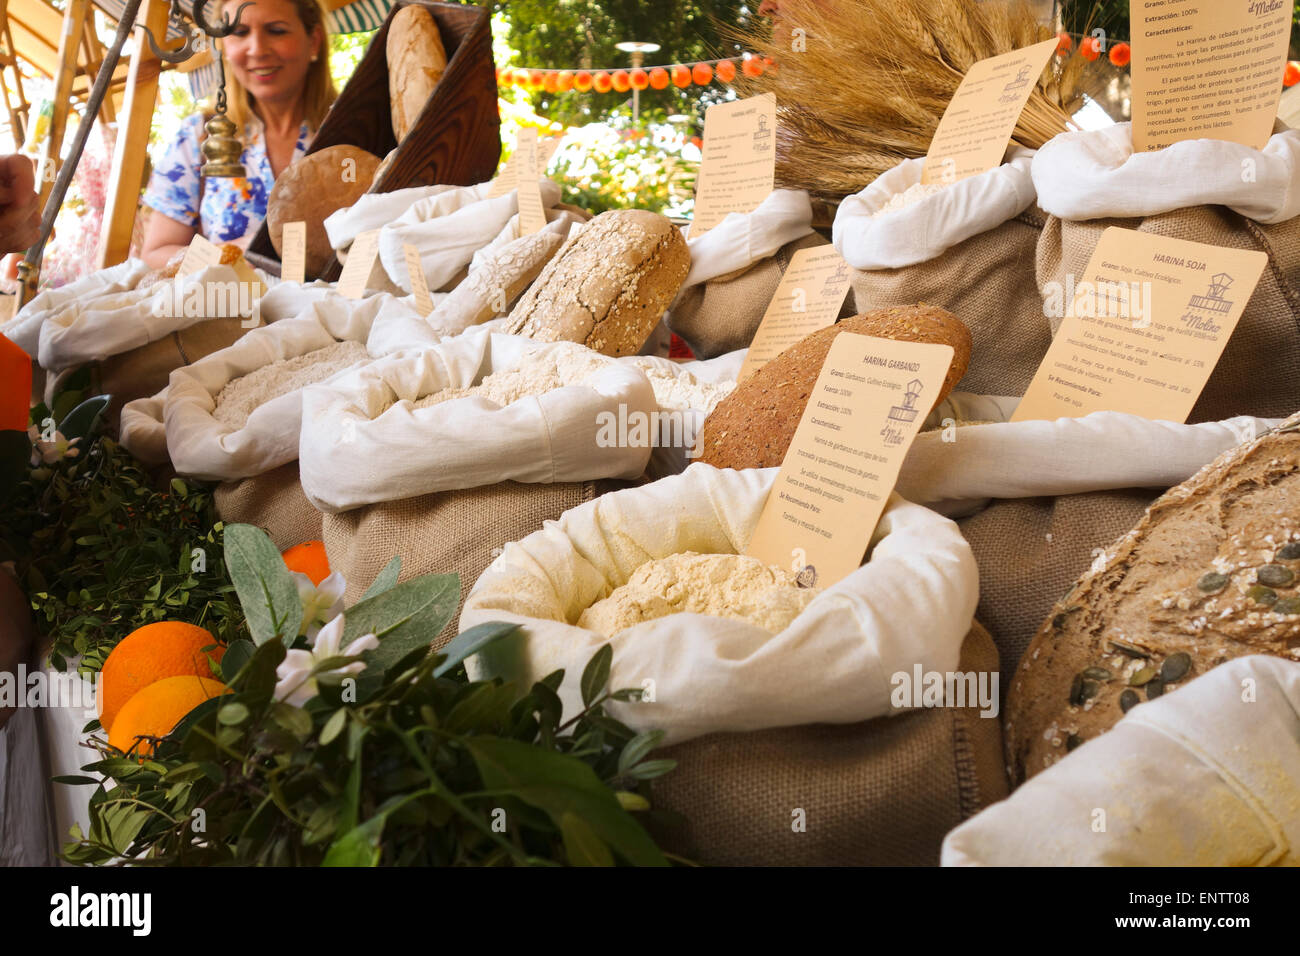 Diversi di farina per pane, macinata dal mulino locale sul display al mercato all'aperto. Andalusia, Spagna. Foto Stock